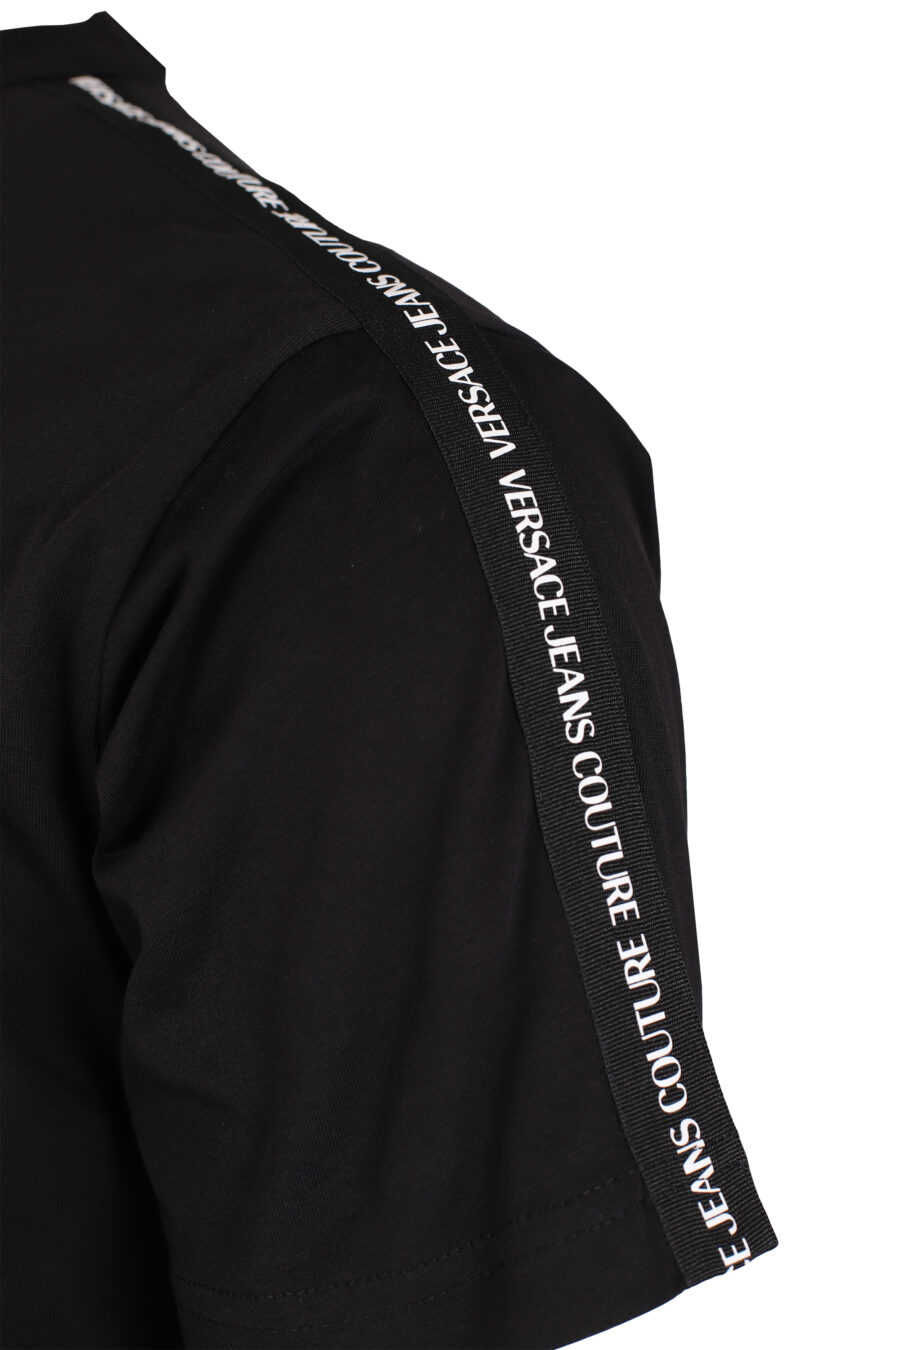 Schwarzes T-Shirt mit Mini-Logo auf den Schultern - IMG 4013